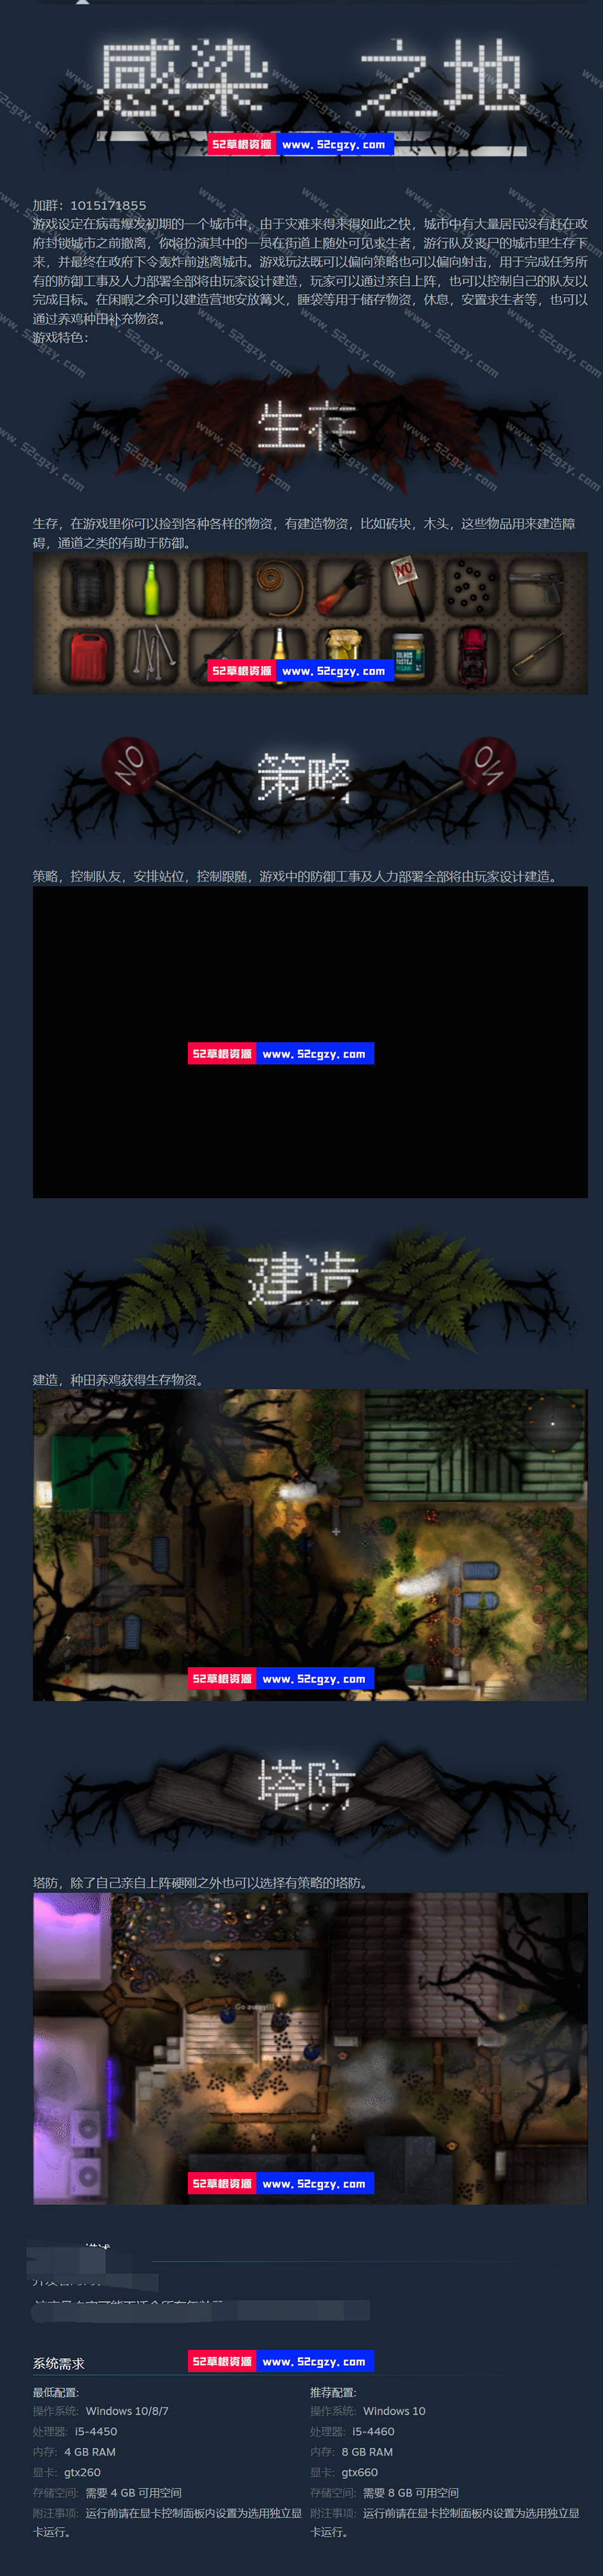 《感染之地》免安装中文绿色版[2.57GB] 单机游戏 第6张